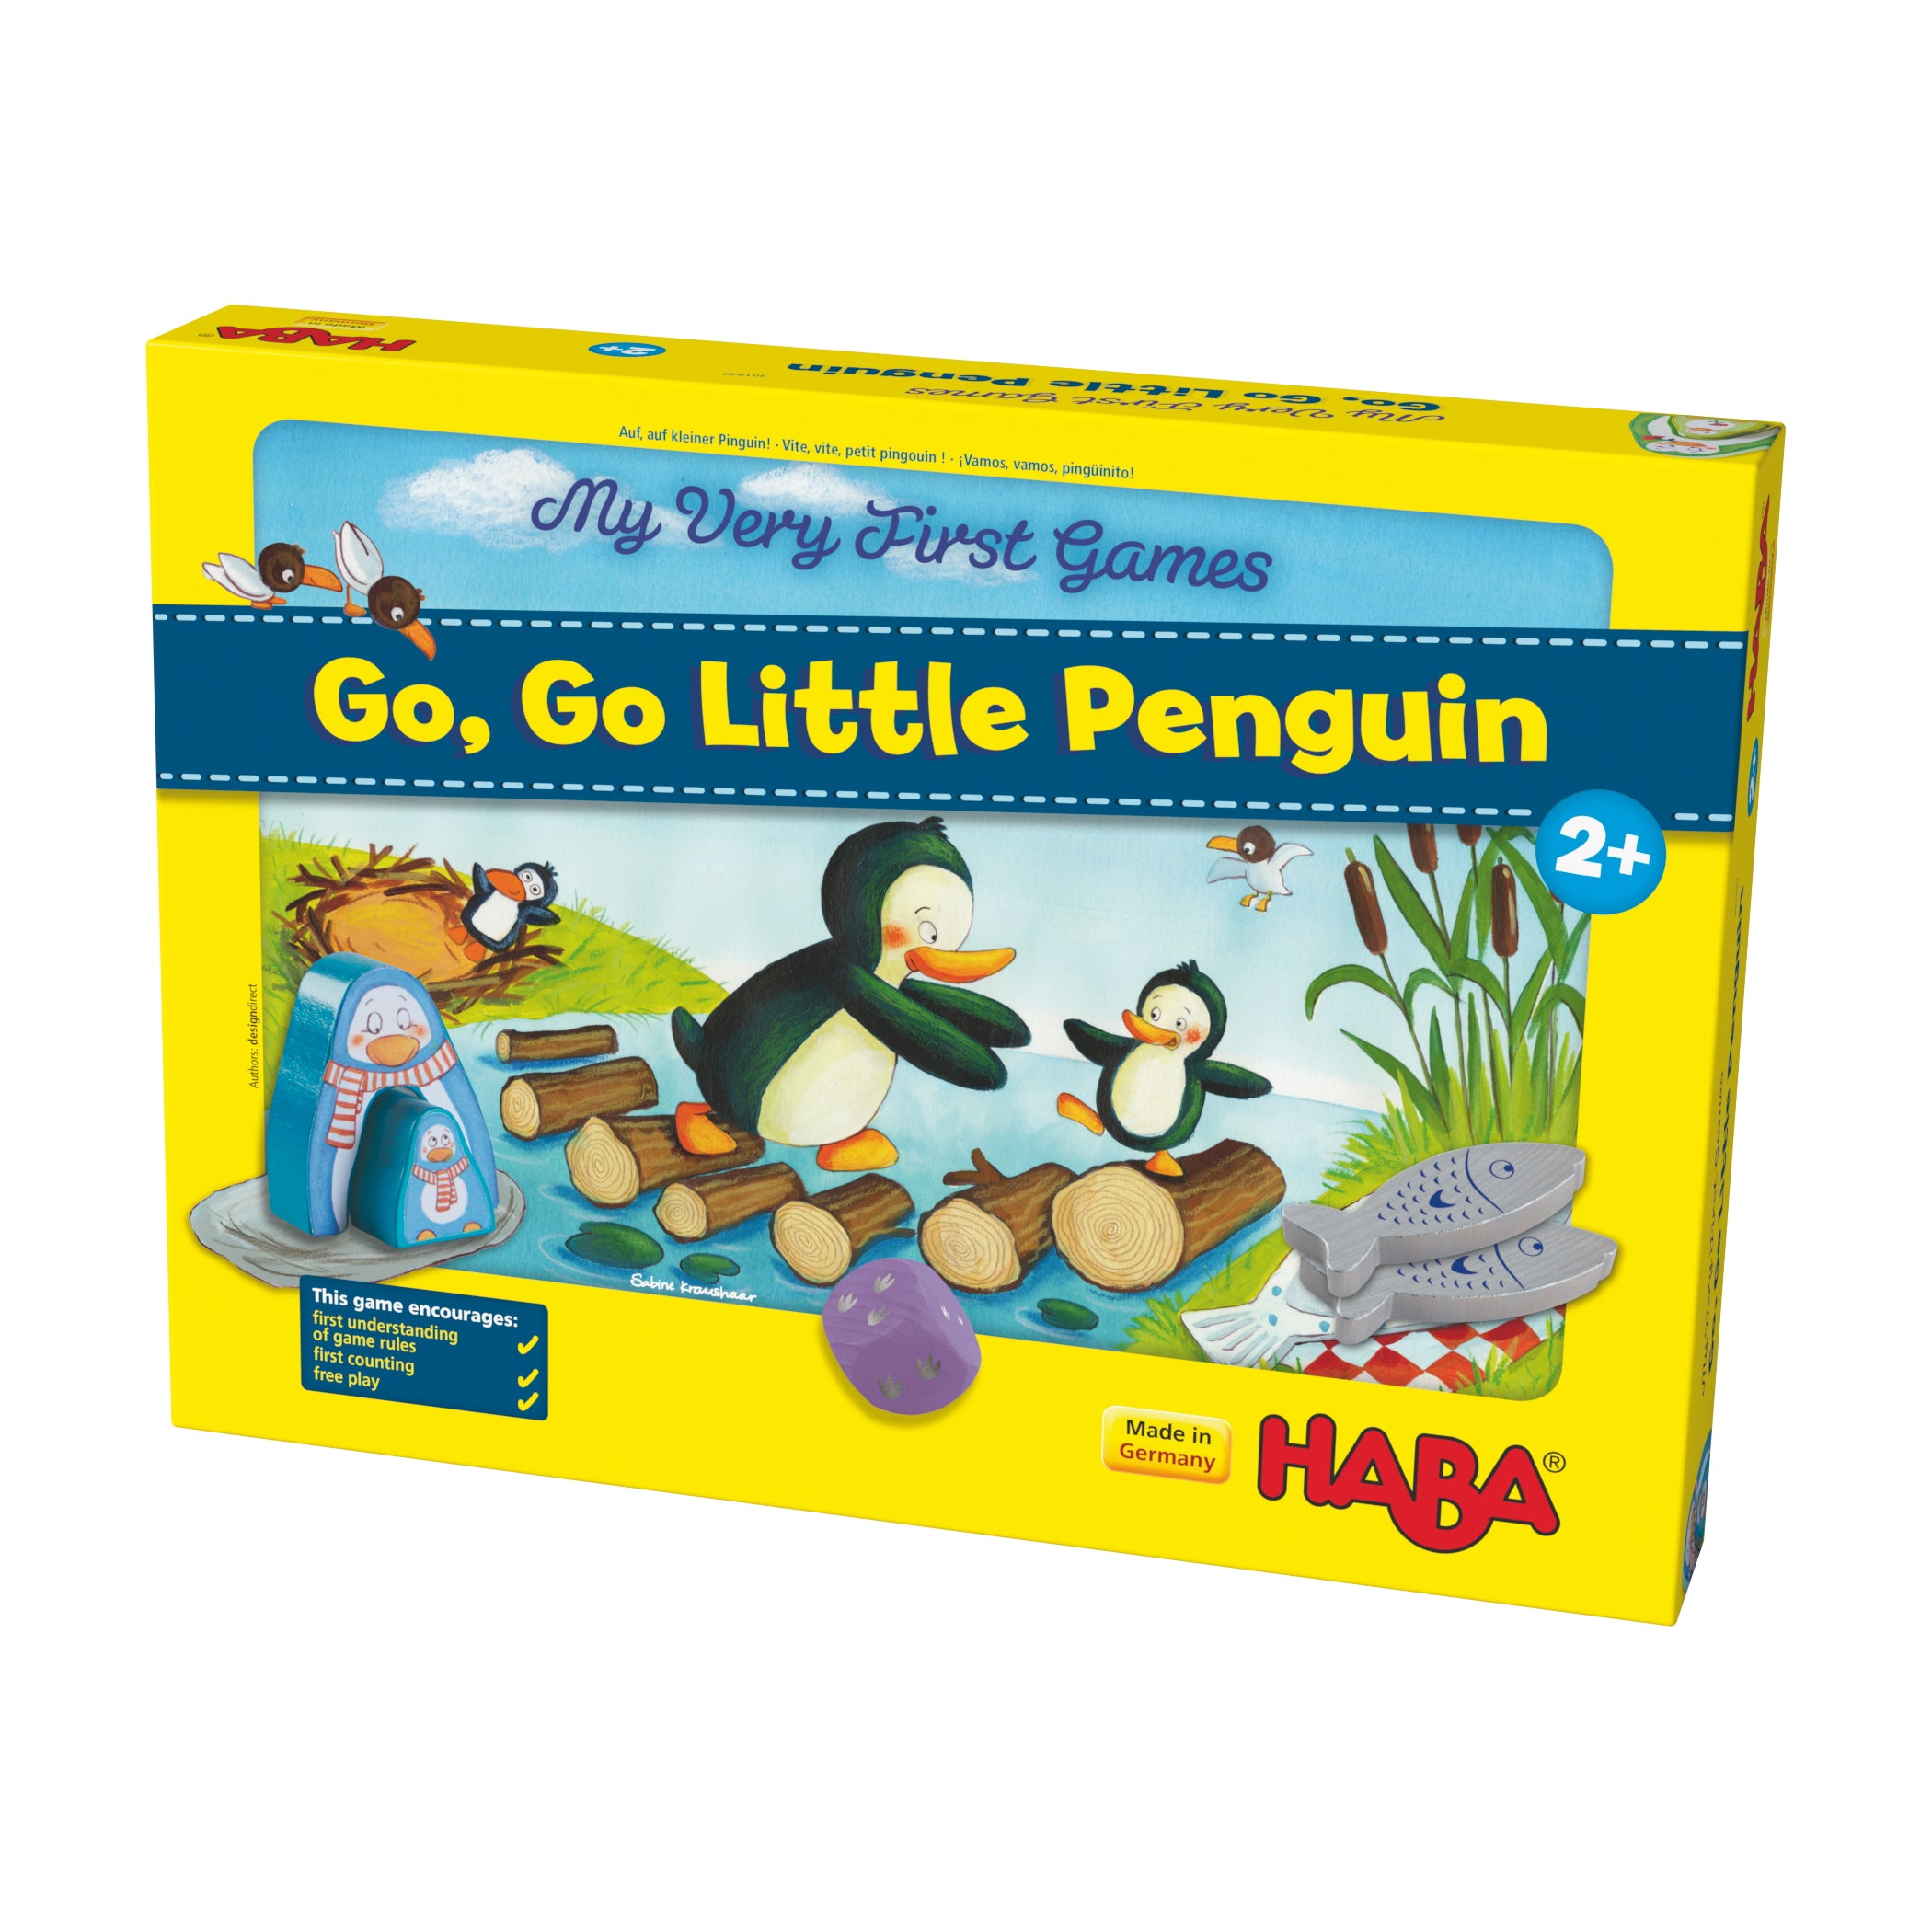 Go, Go, Little Penguin!